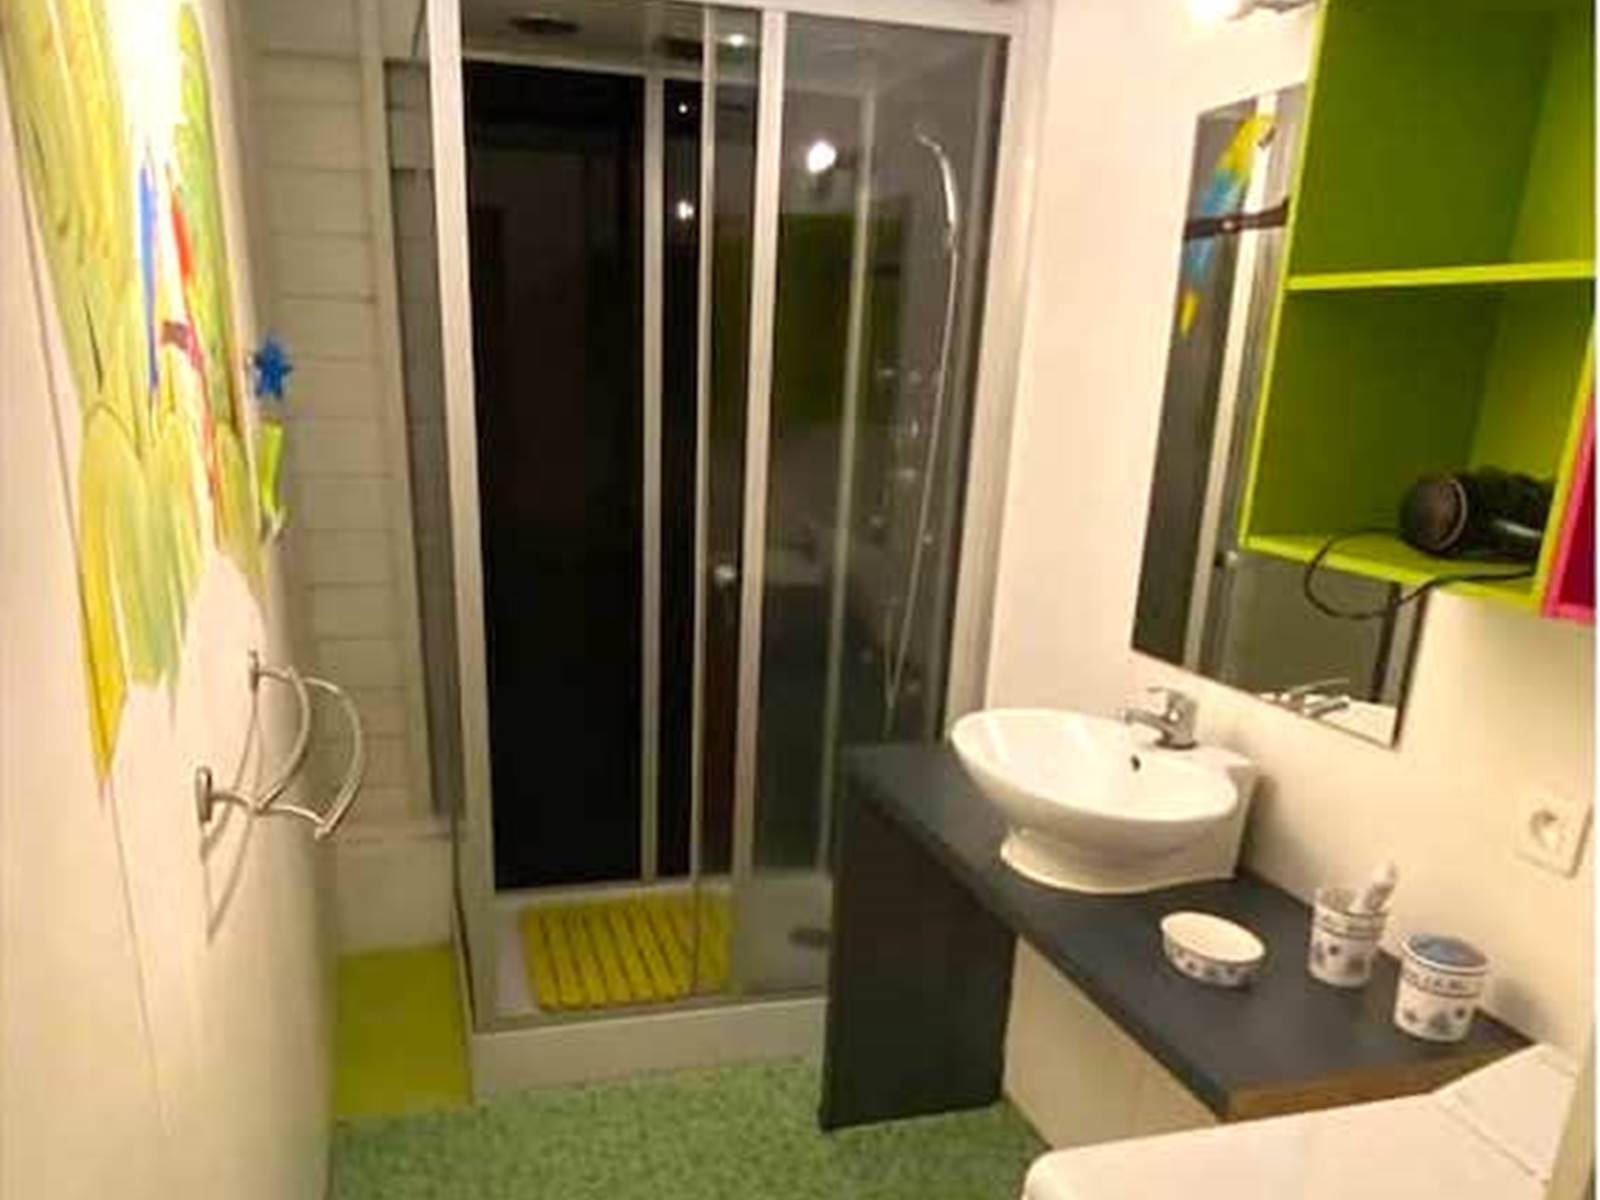 Salle de bain avec douche - WC séparés - machine à laver